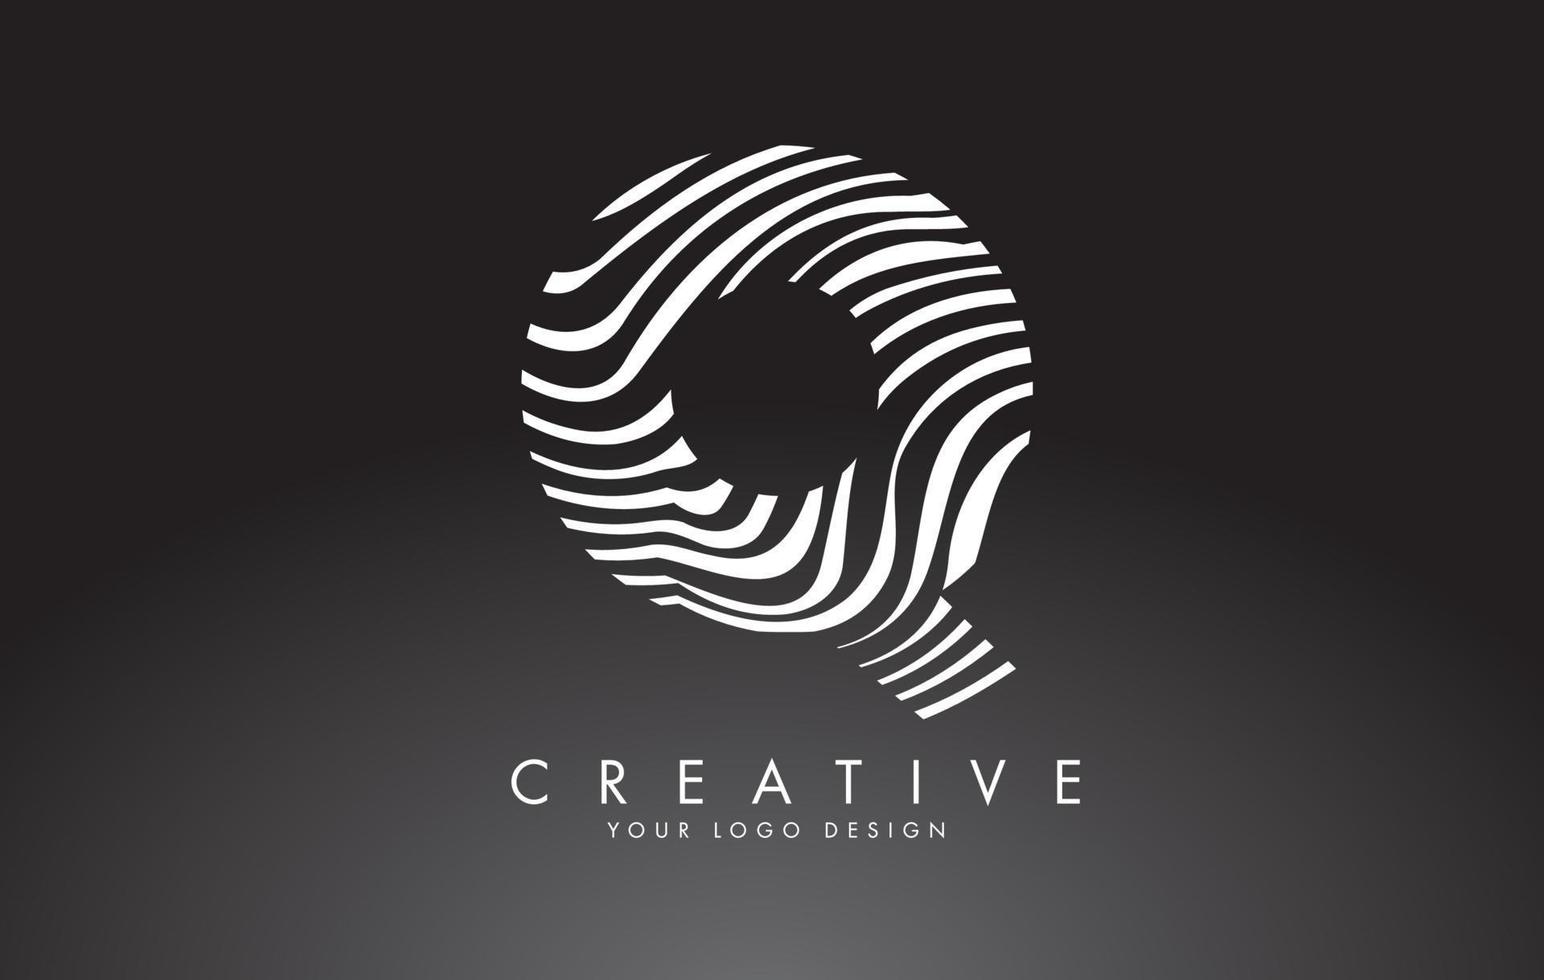 q lettera logo design con impronta digitale, legno bianco e nero o texture zebra su sfondo nero. vettore